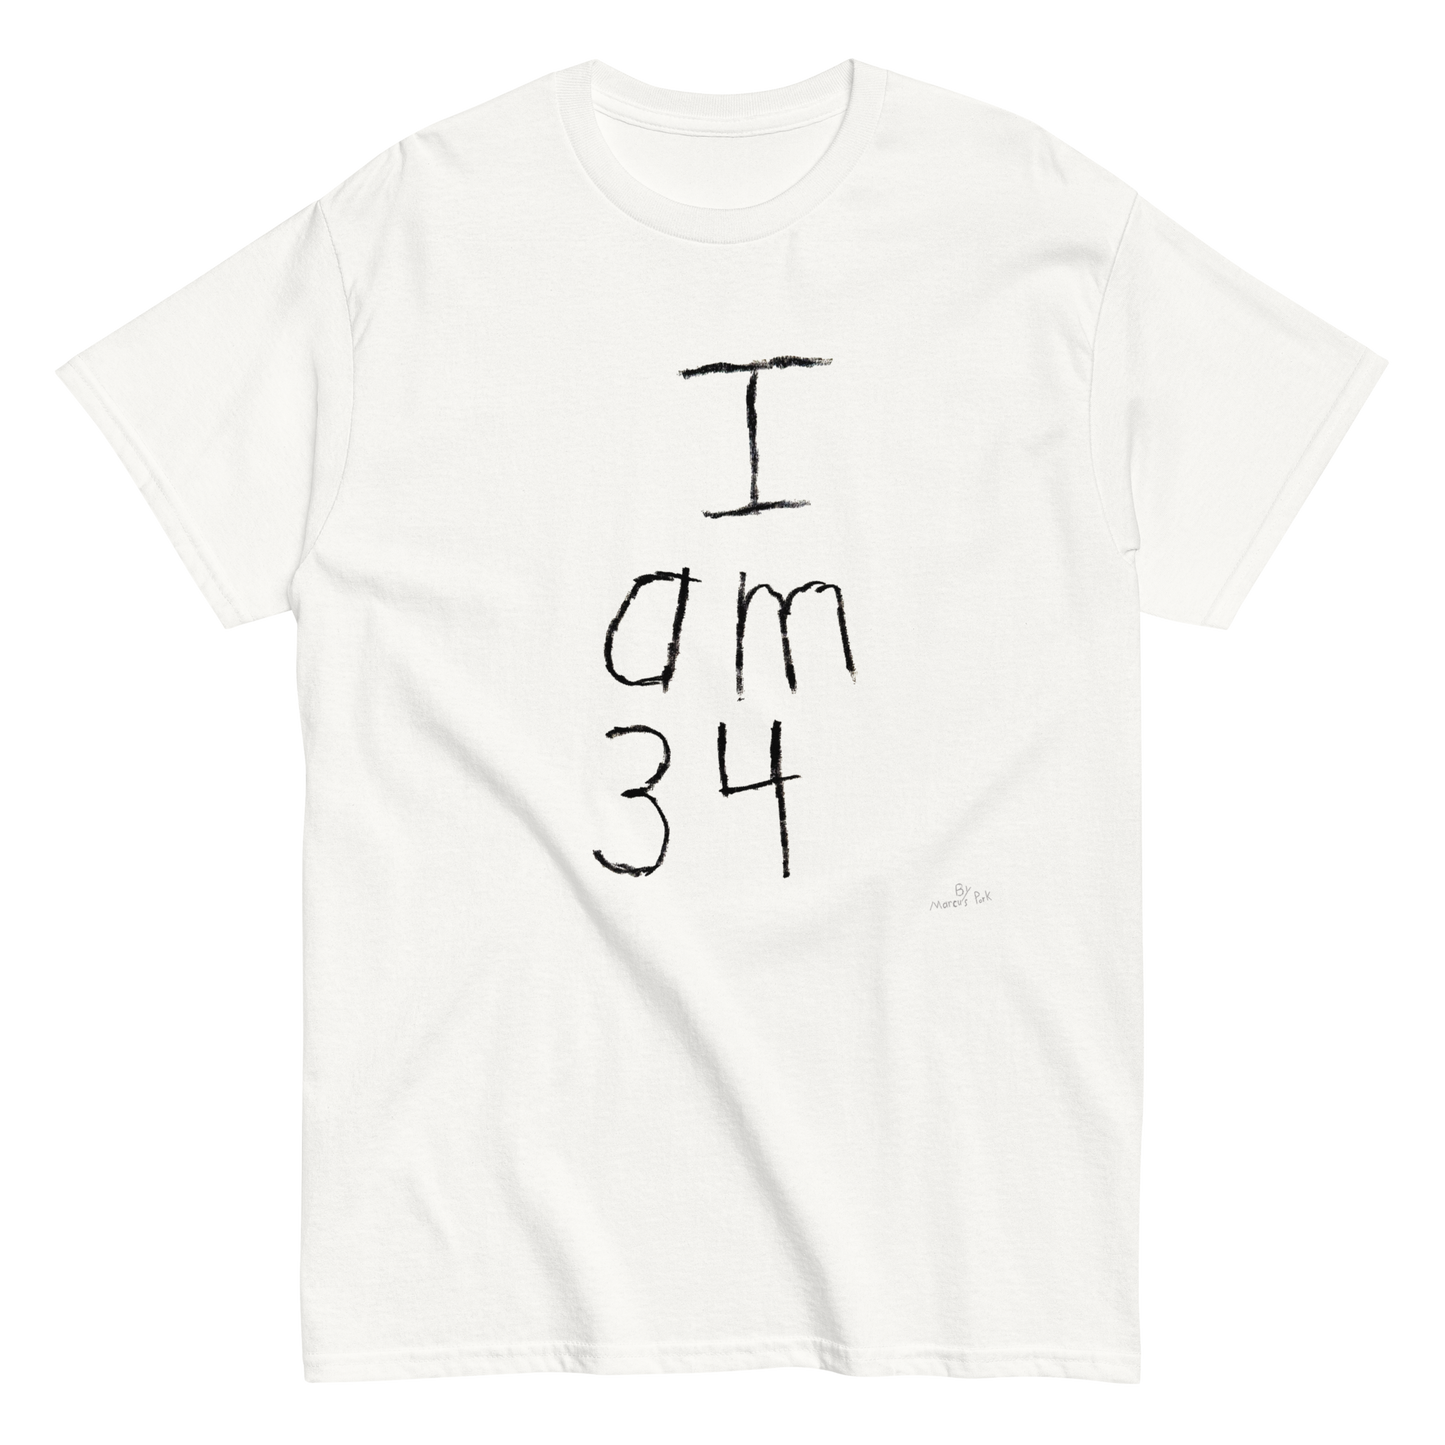 I am 34 T-Shirt